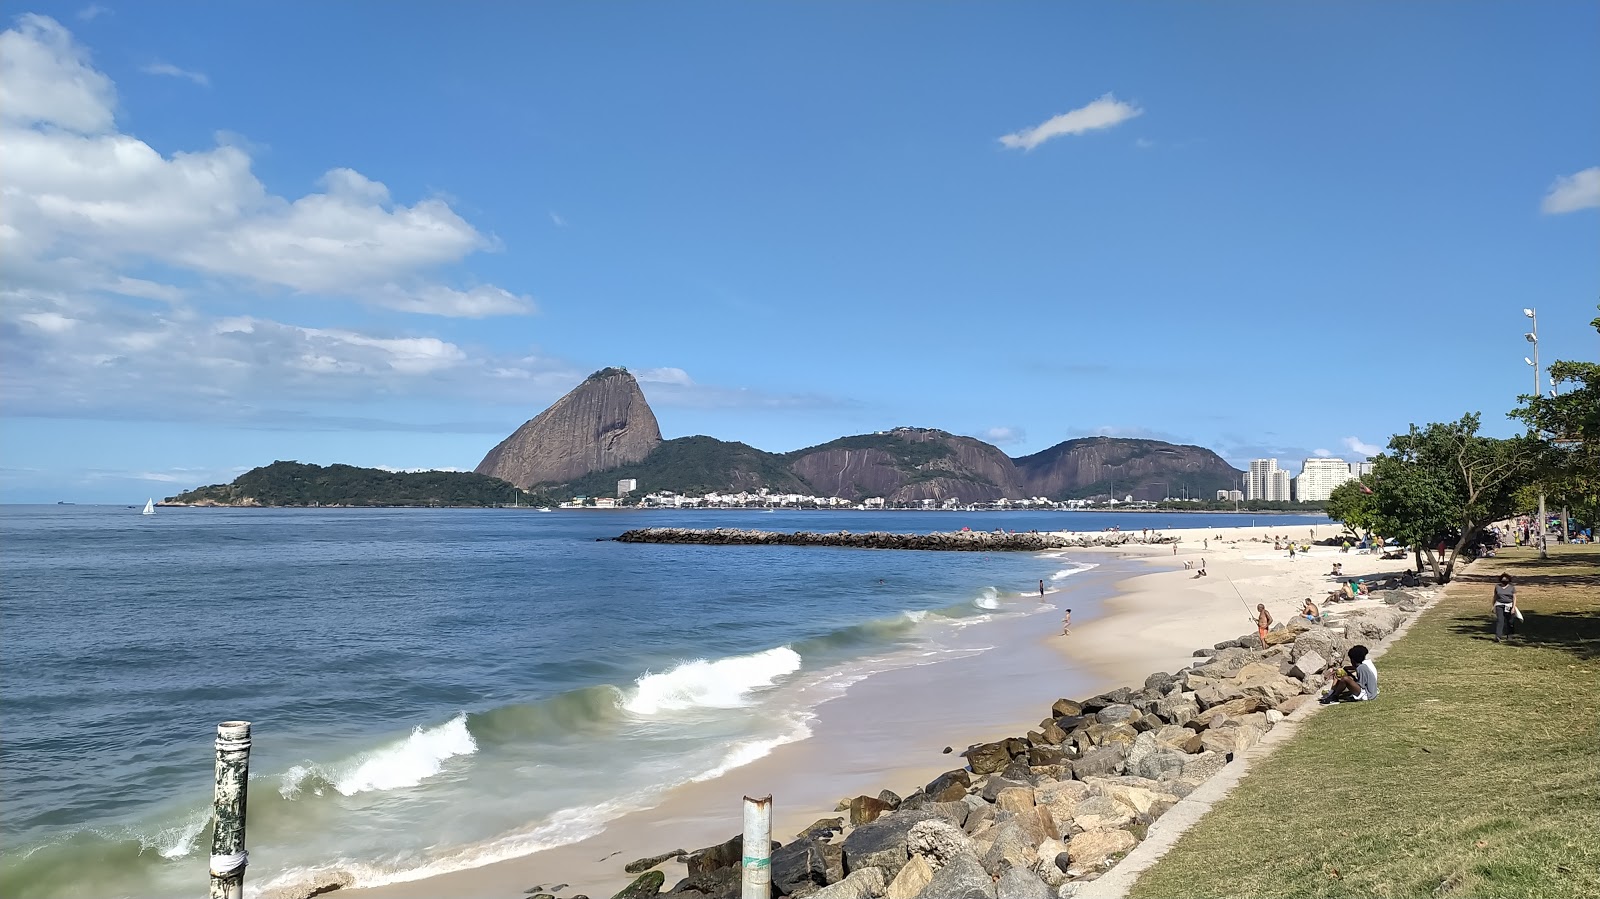 Fotografie cu Praia do Flamengo - locul popular printre cunoscătorii de relaxare